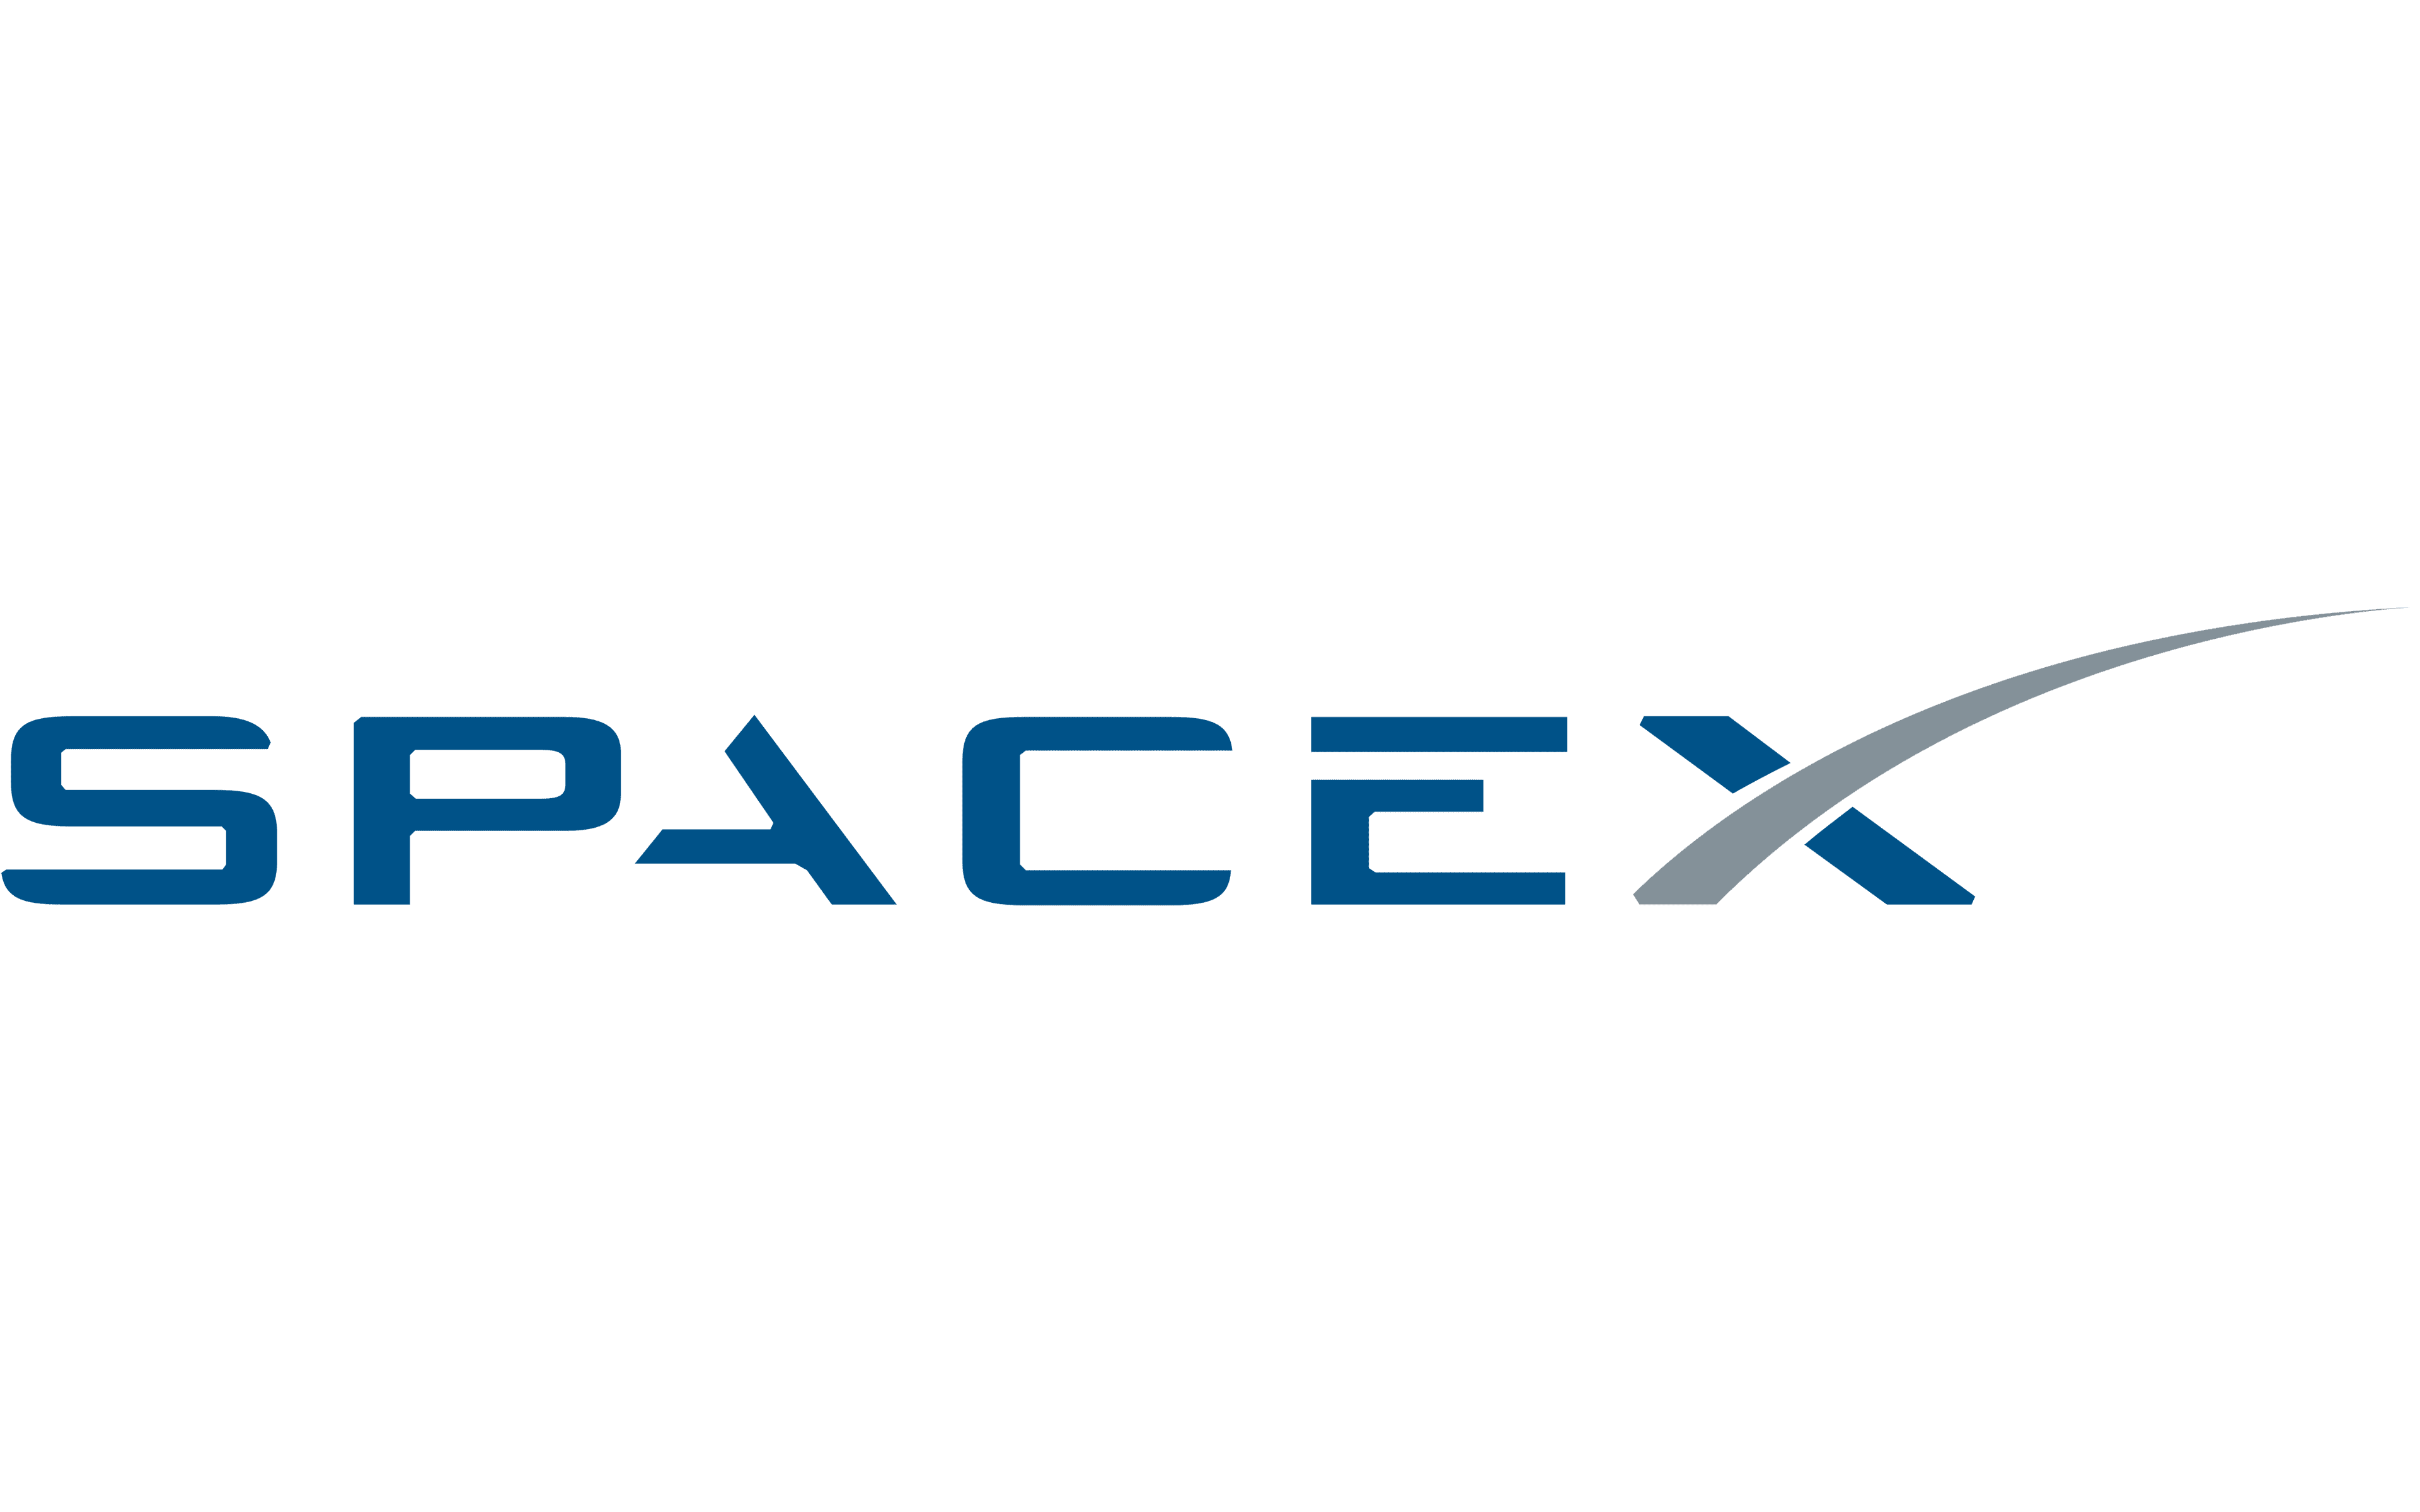 spacex rocket logo